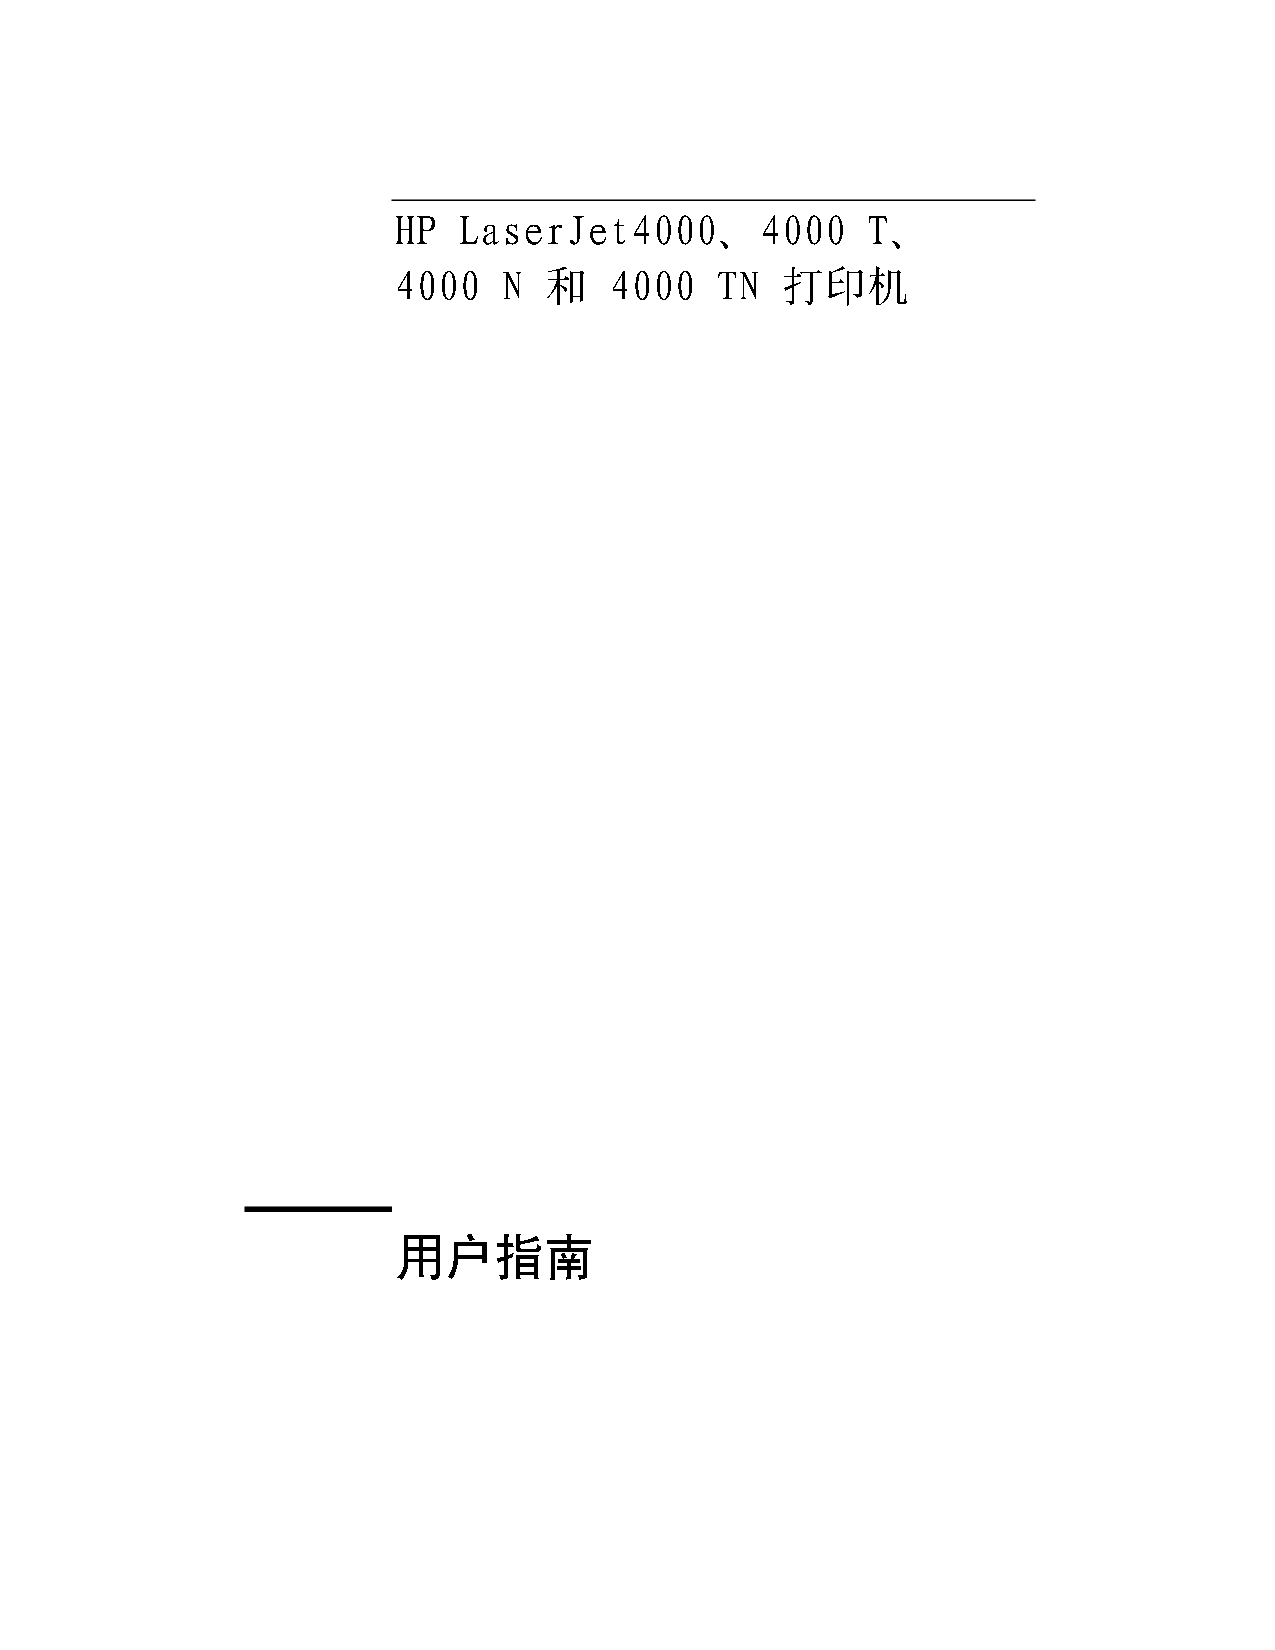 惠普 HP LaserJet 4000 用户指南 第1页